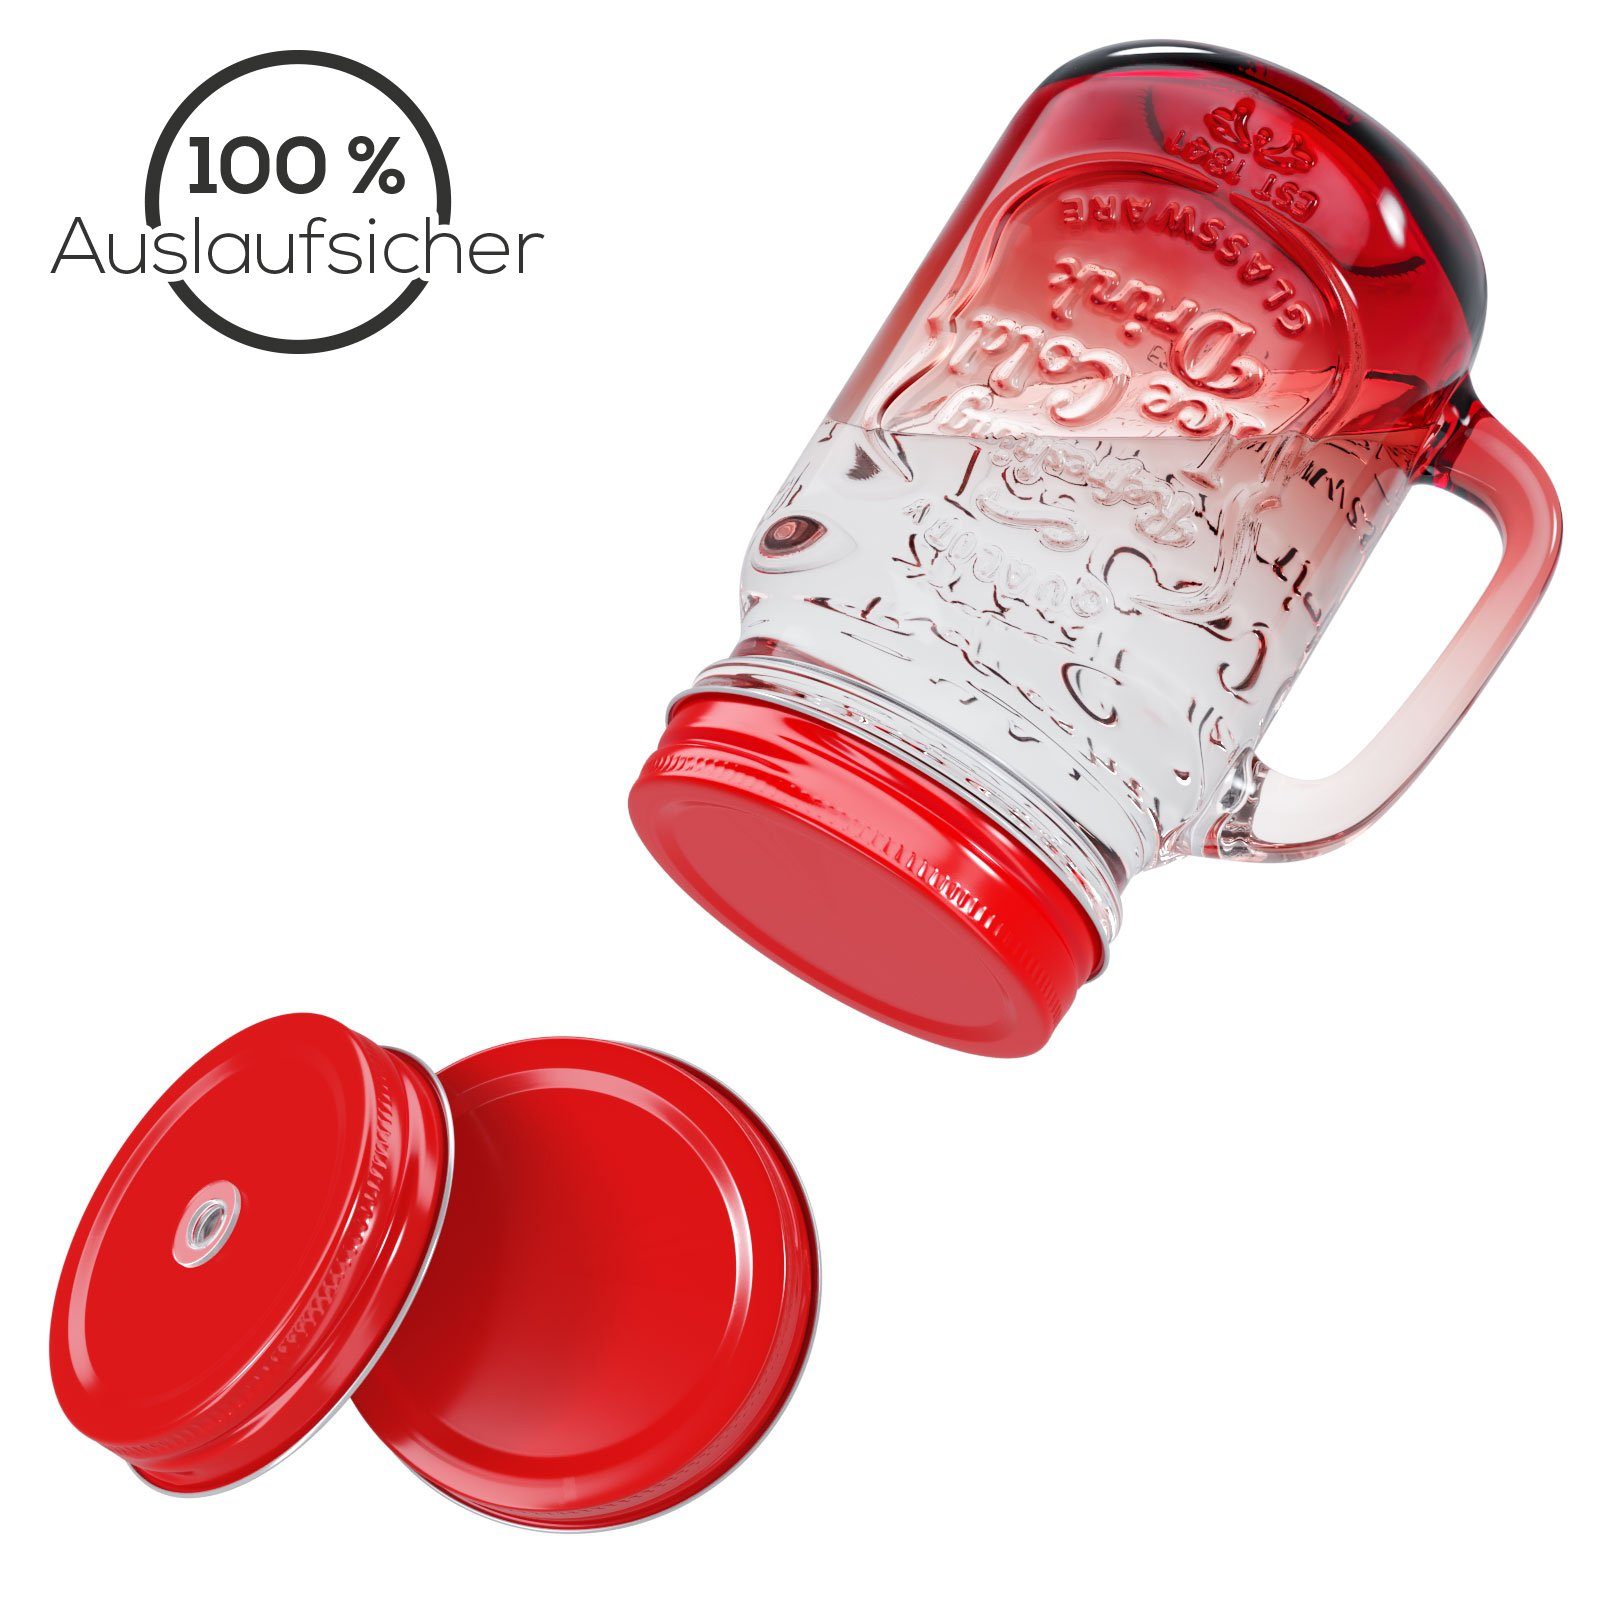 Glas Farbverlauf 500ml Wellgro Deckel + und - Ersatzdeckeln Trinkgläser Trinkhalm